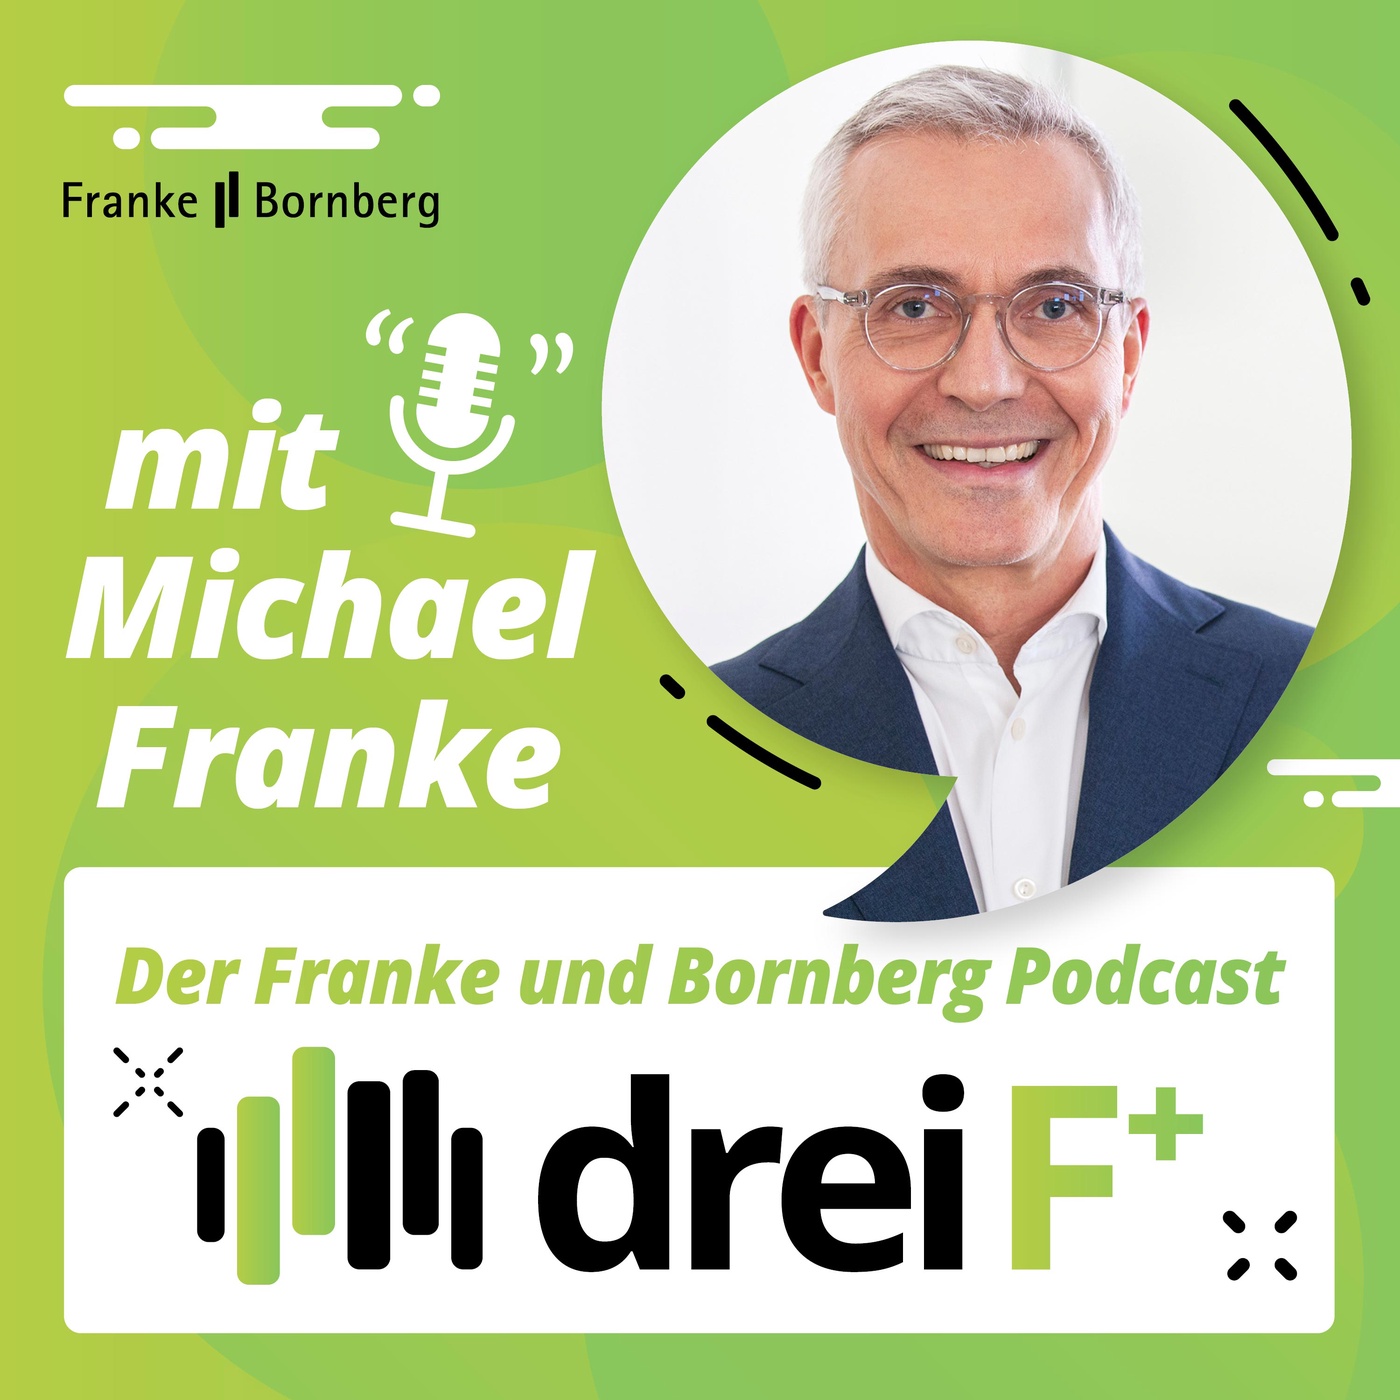 drei F+ - Der Franke und Bornberg Podcast zu Versicherungen, Finanzen und Nachhaltigkeit